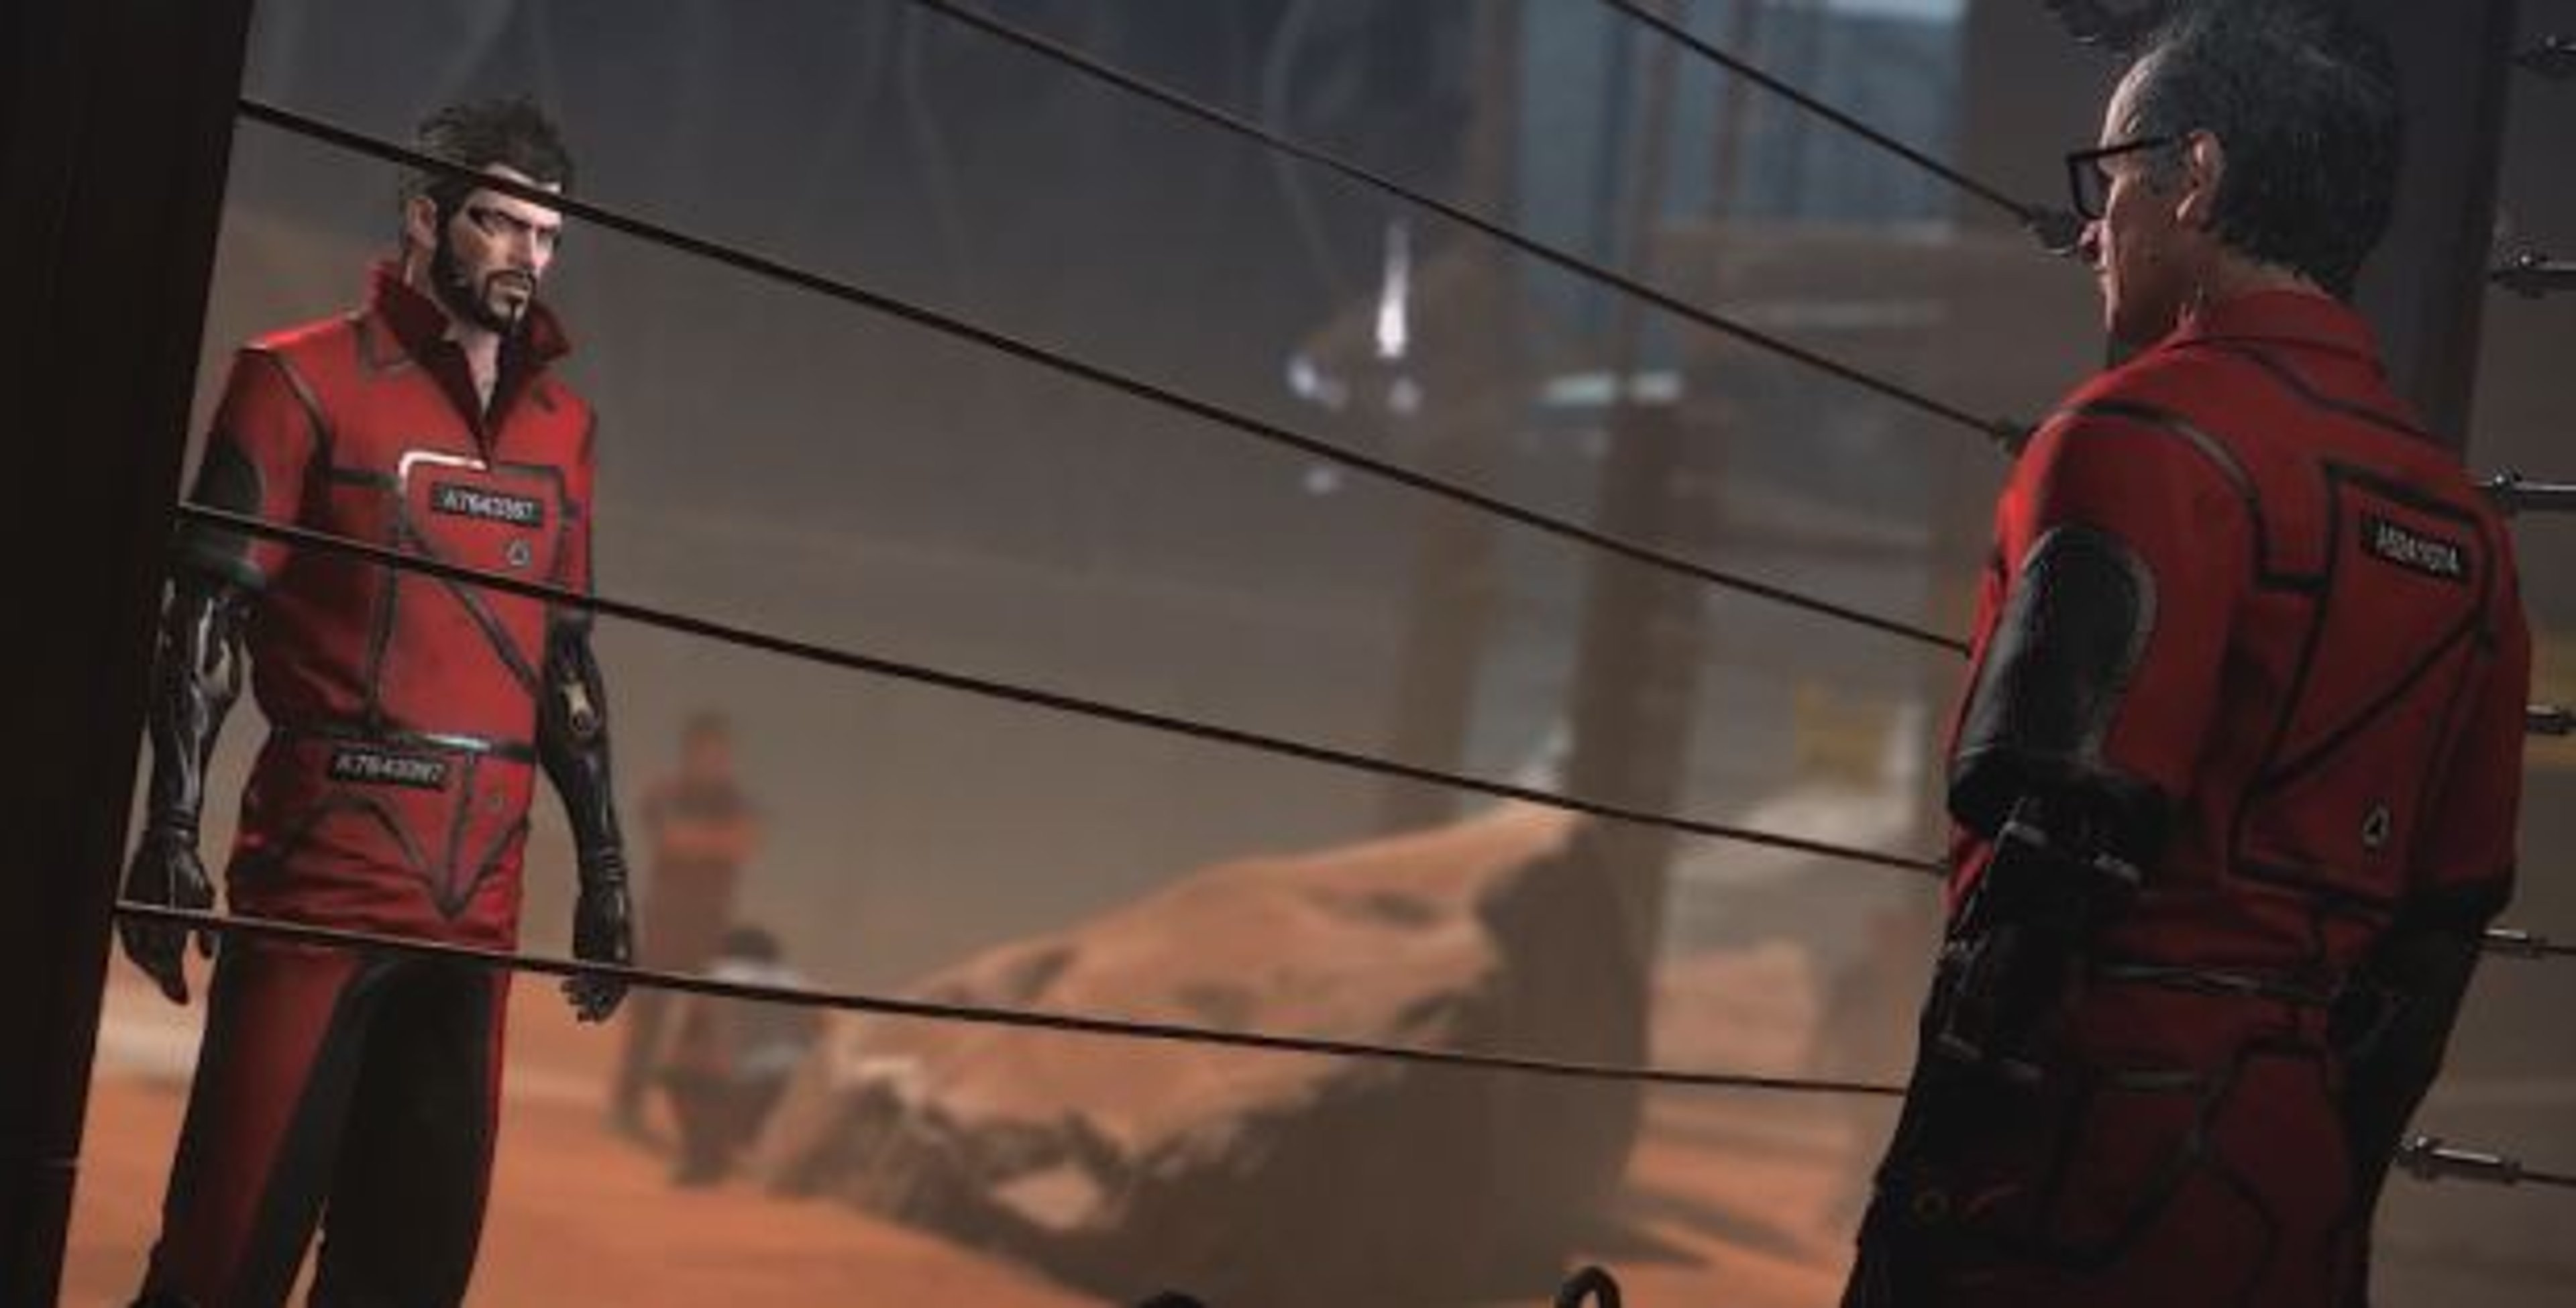 A Criminal Past: disponibile il DLC per Deus Ex Mankind Divided. Tutta la storia in un Video